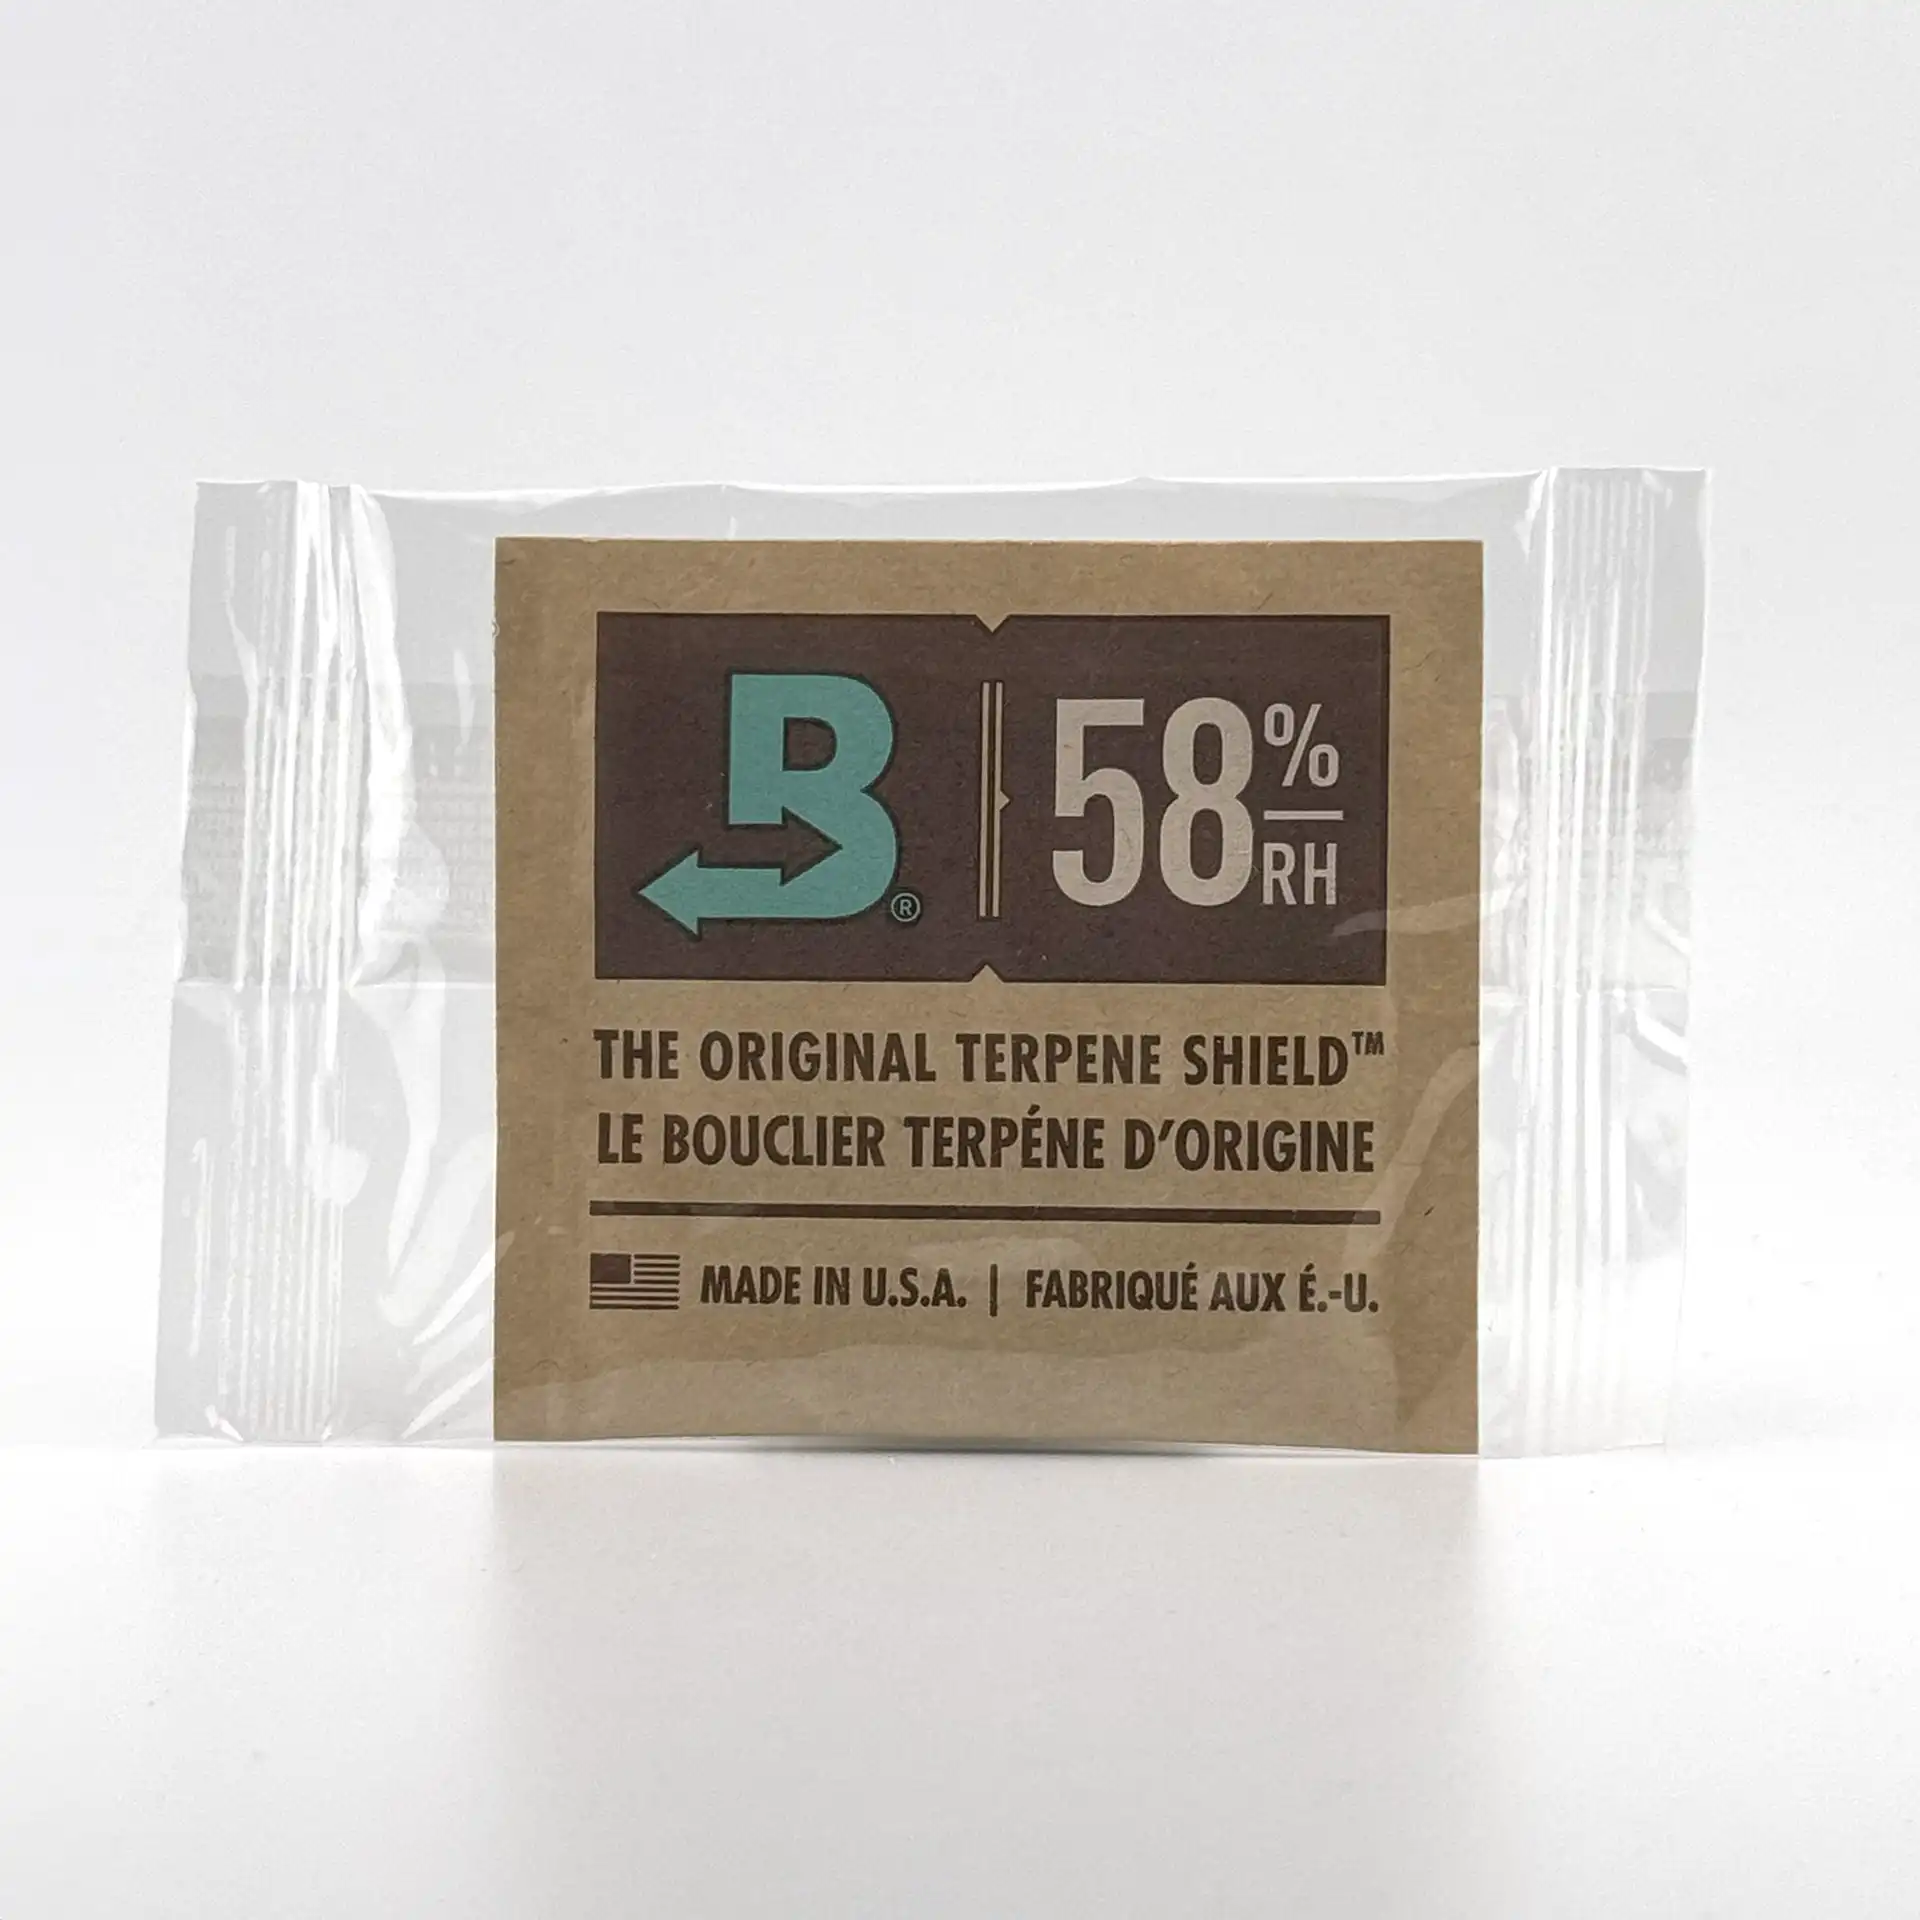 Boveda Hygro-Pack 58%, 8 g